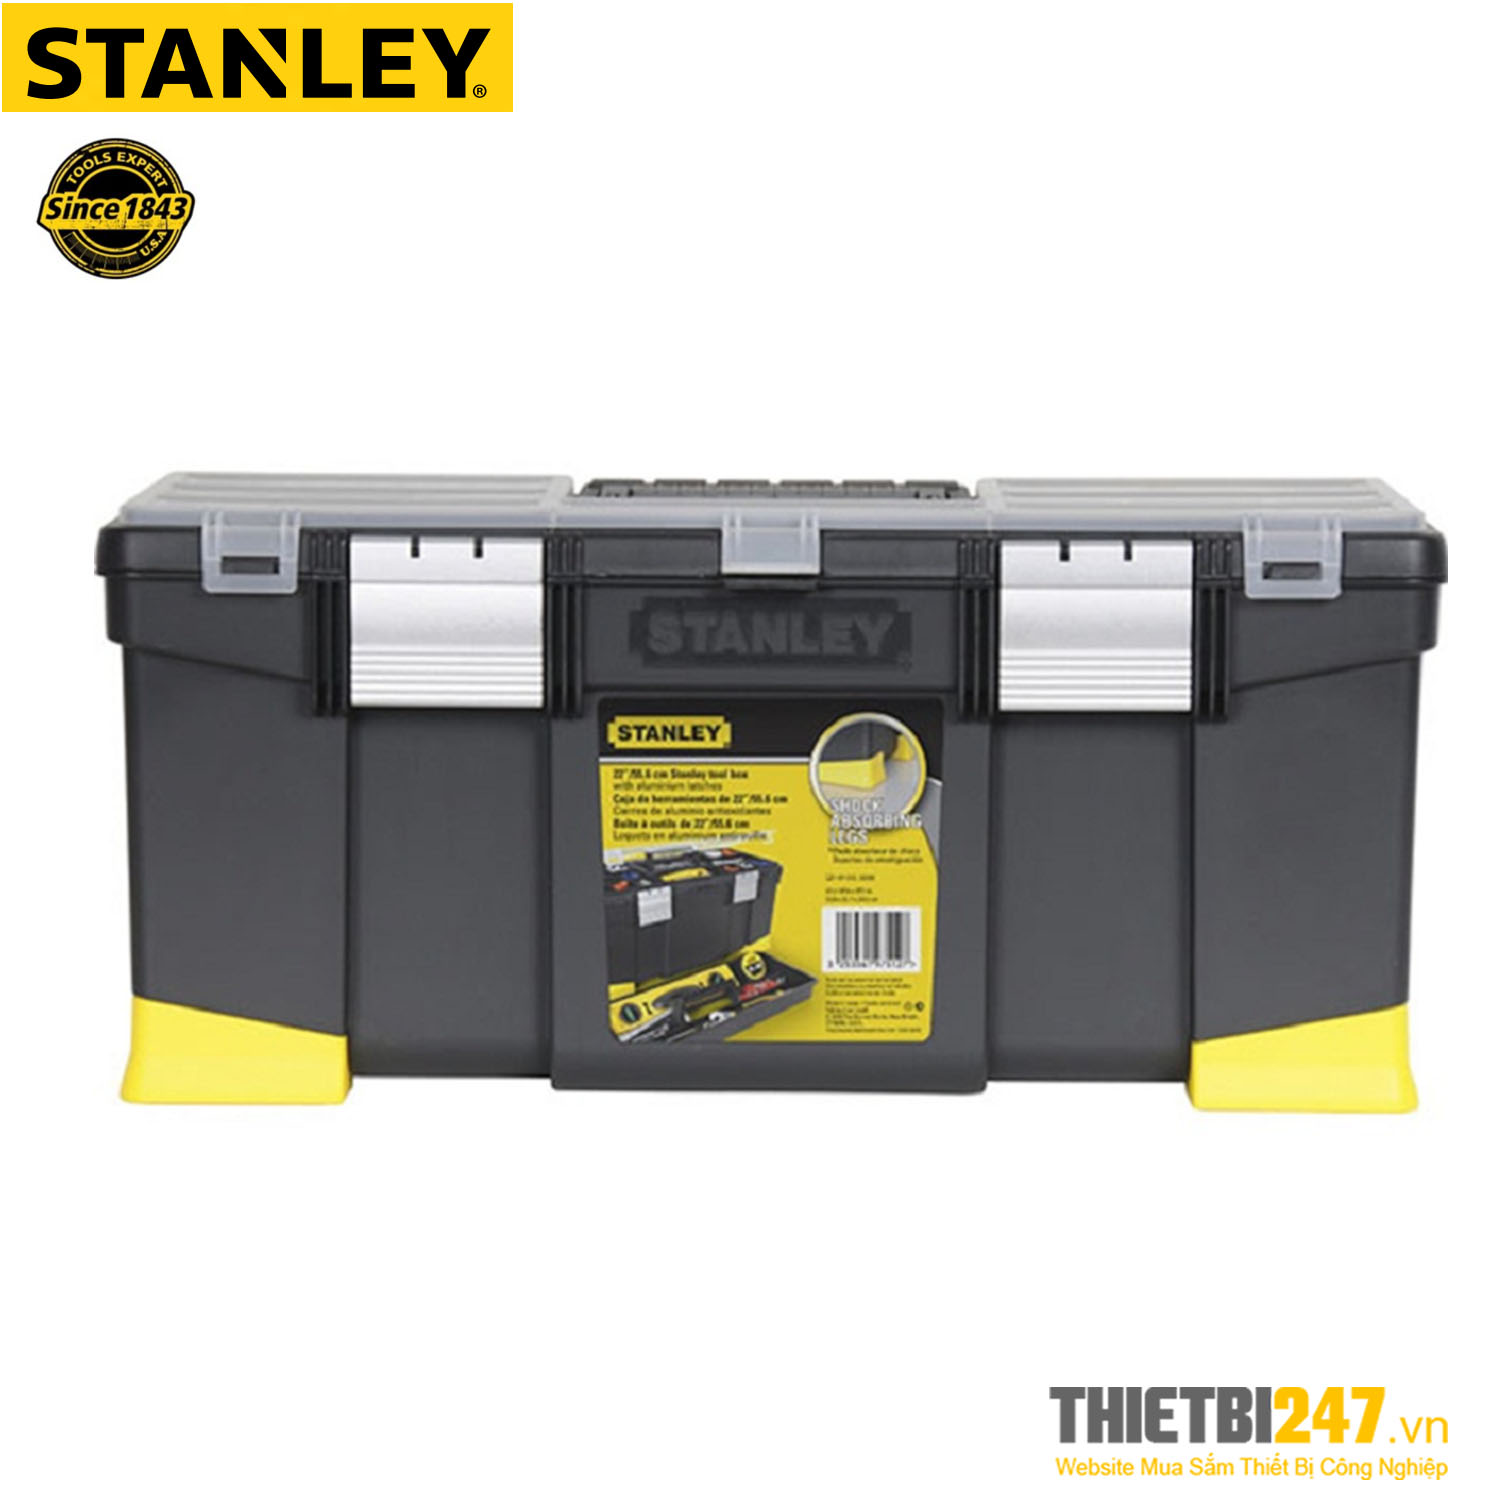 Hộp dụng cụ Stanley 1-97-512 55.6x25.7x24.8cm